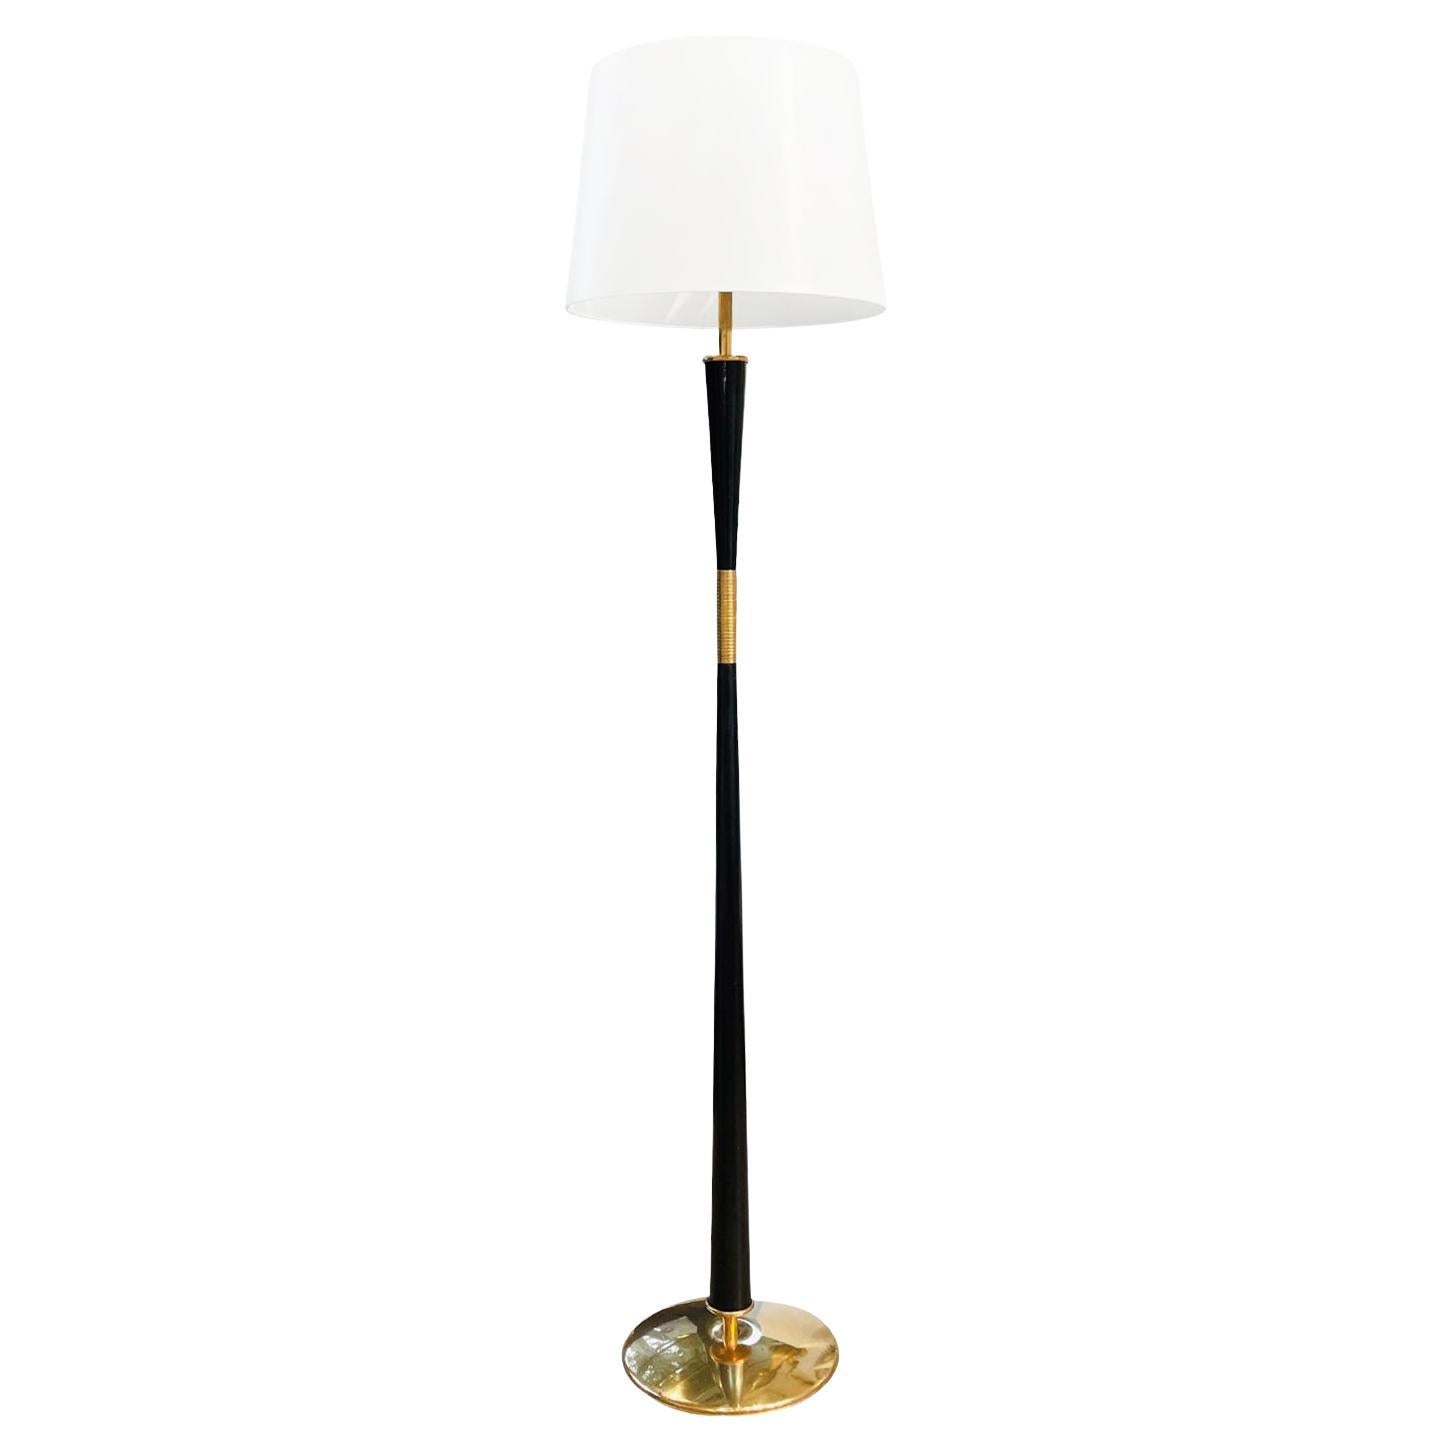 20th Century Italian Mid-Century Modern Iron Floor Lamp - Vintage Brass Light For Sale